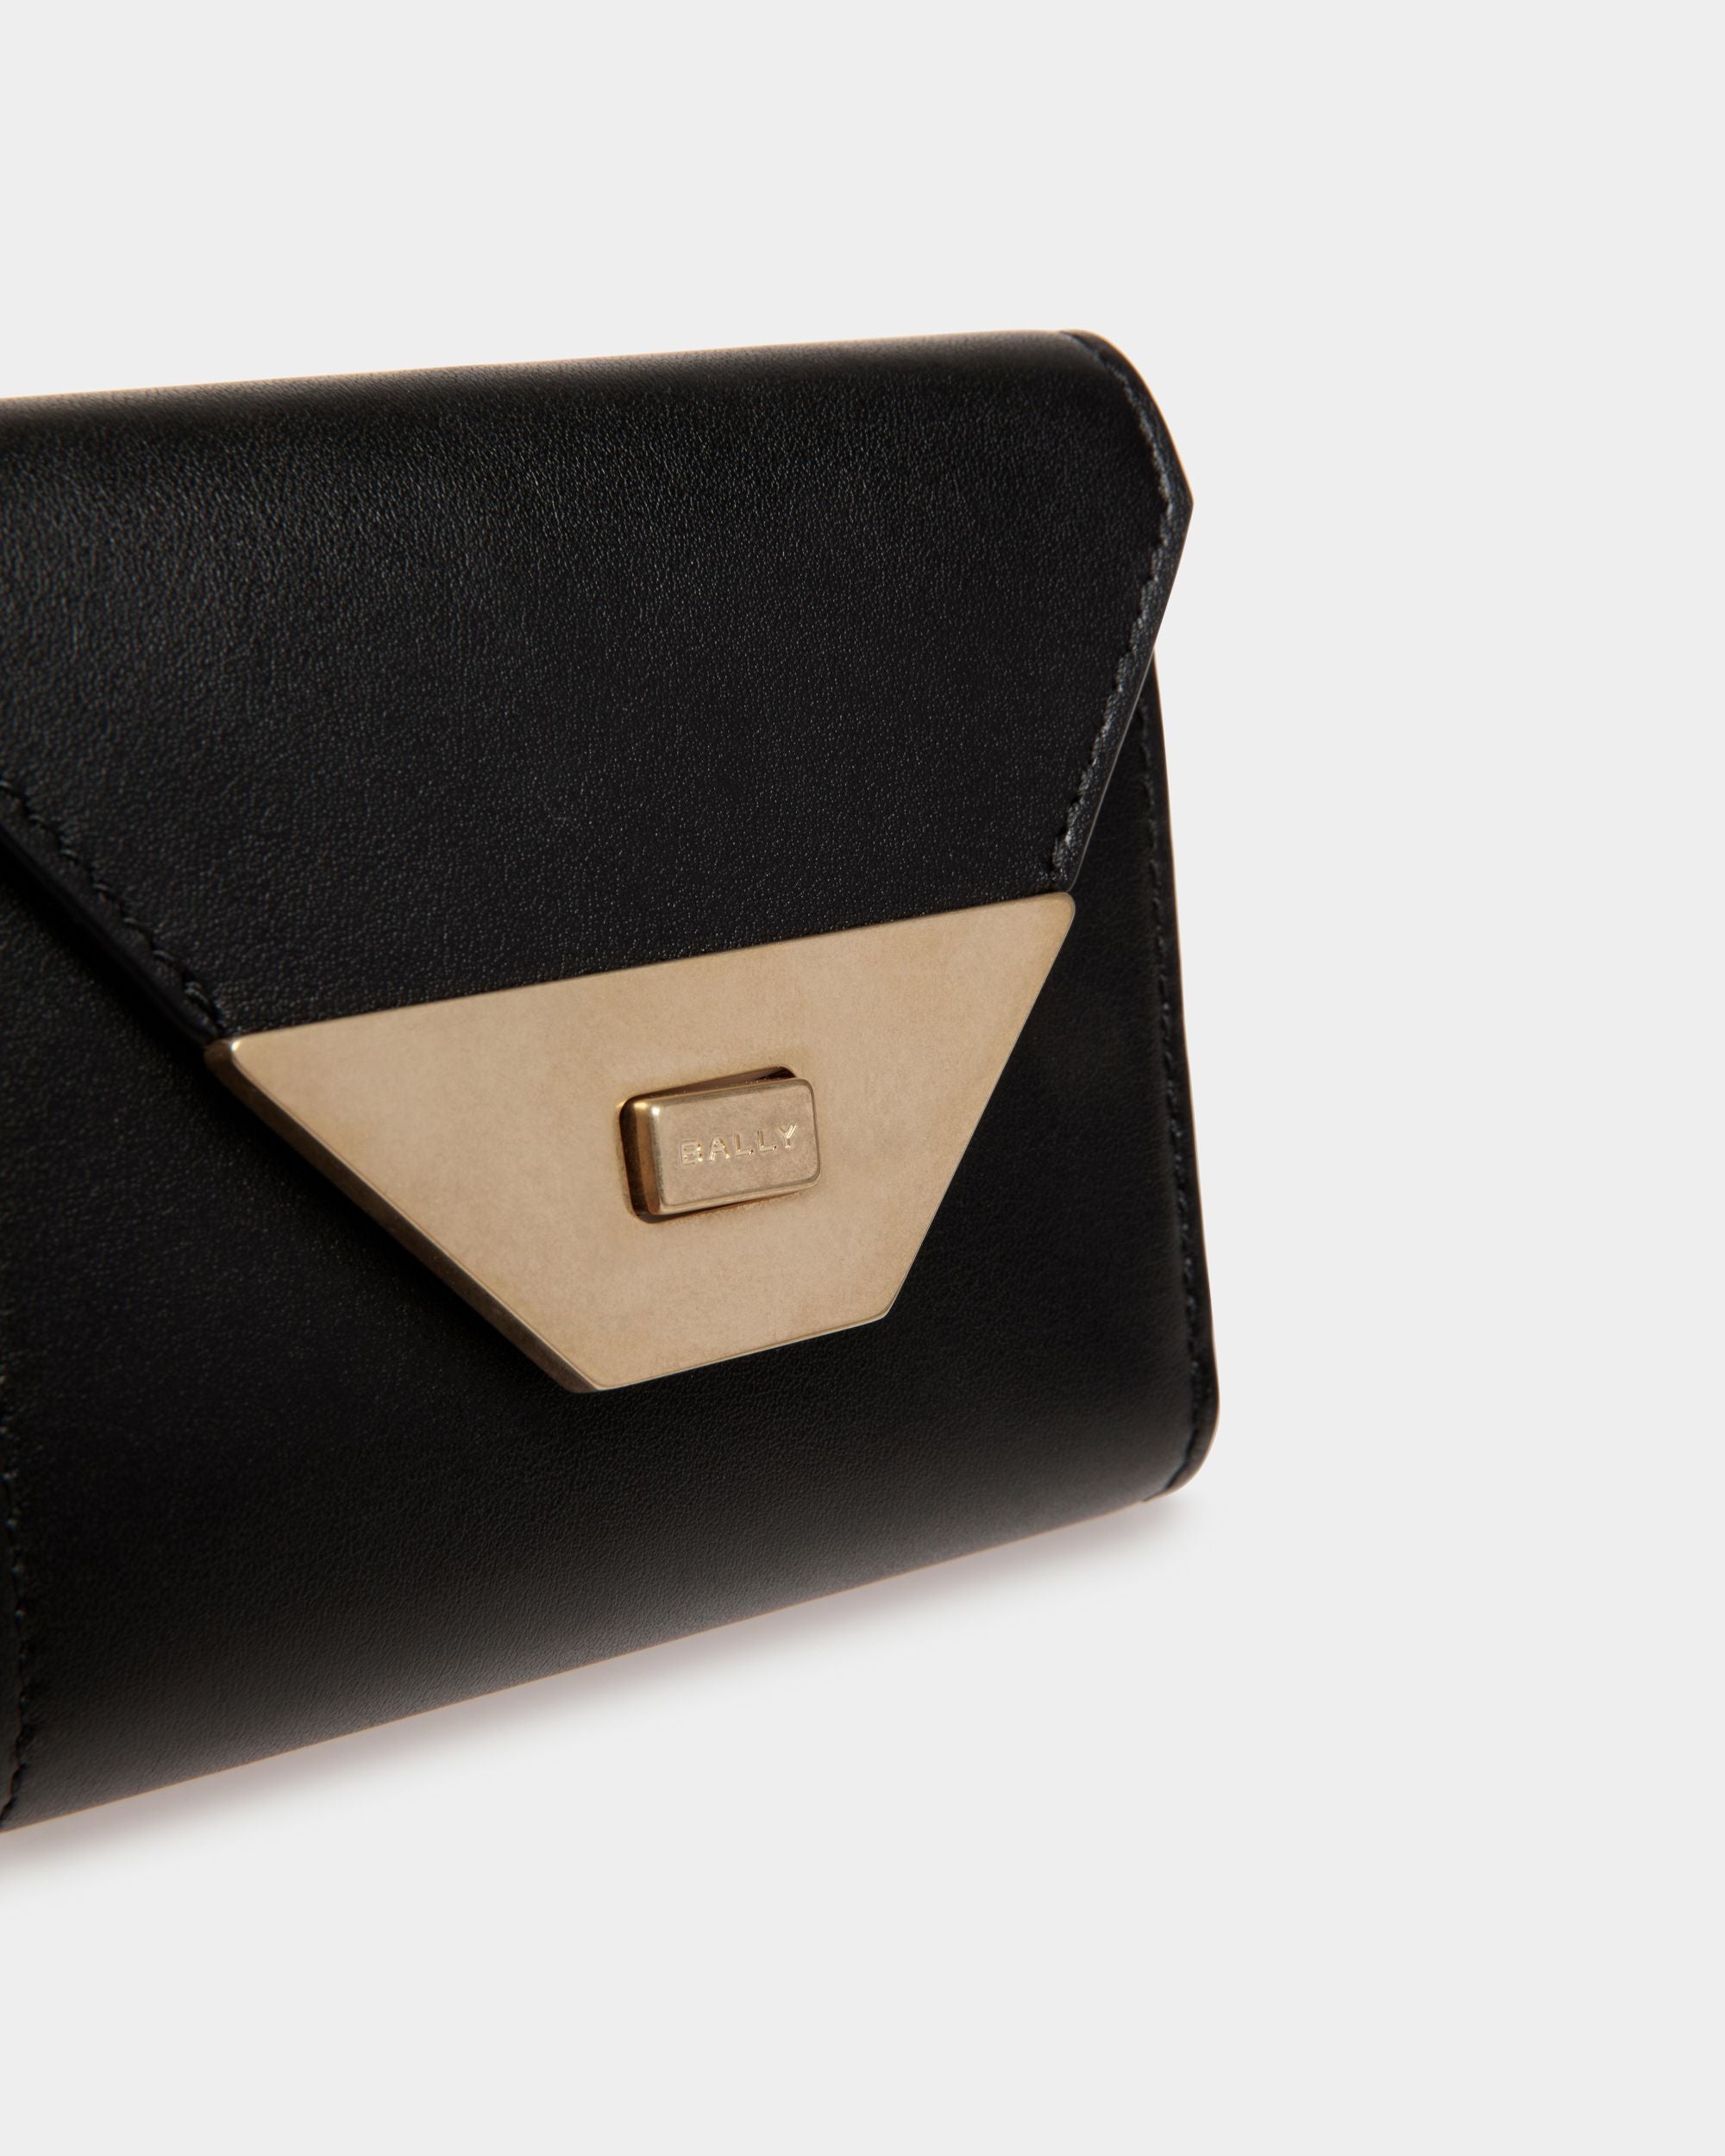 Tilt | Women's Wallet in Black Leather | Bally | Still Life Detail